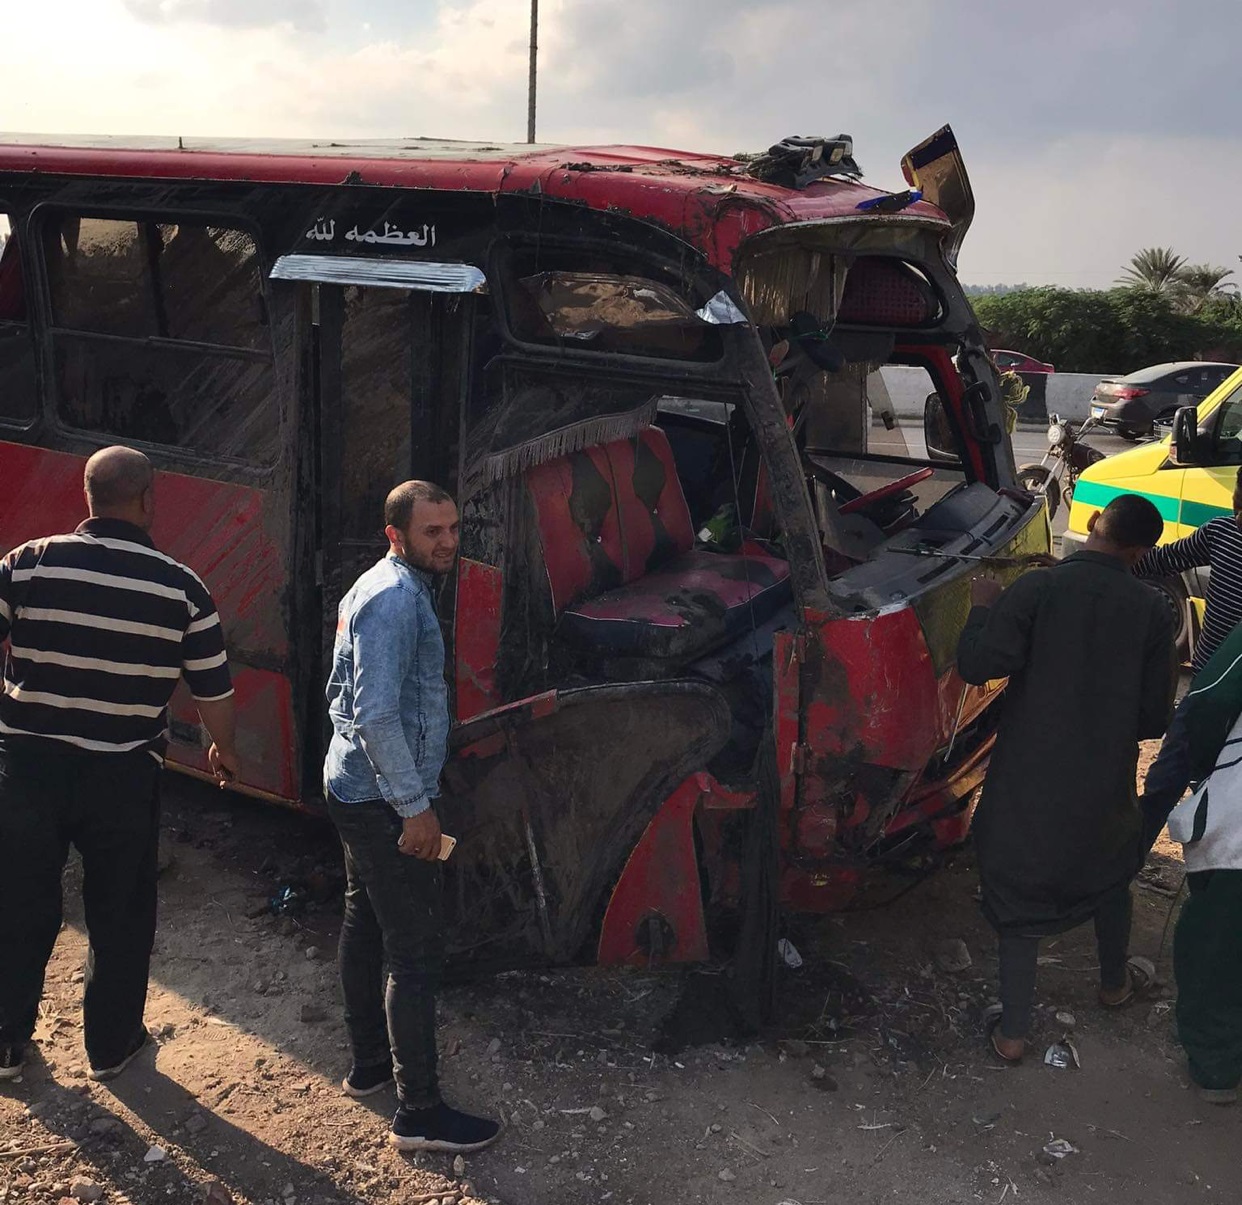 جنازة مهيبة لـ 5 ضحايا لحادث « حافلة المنصورة »